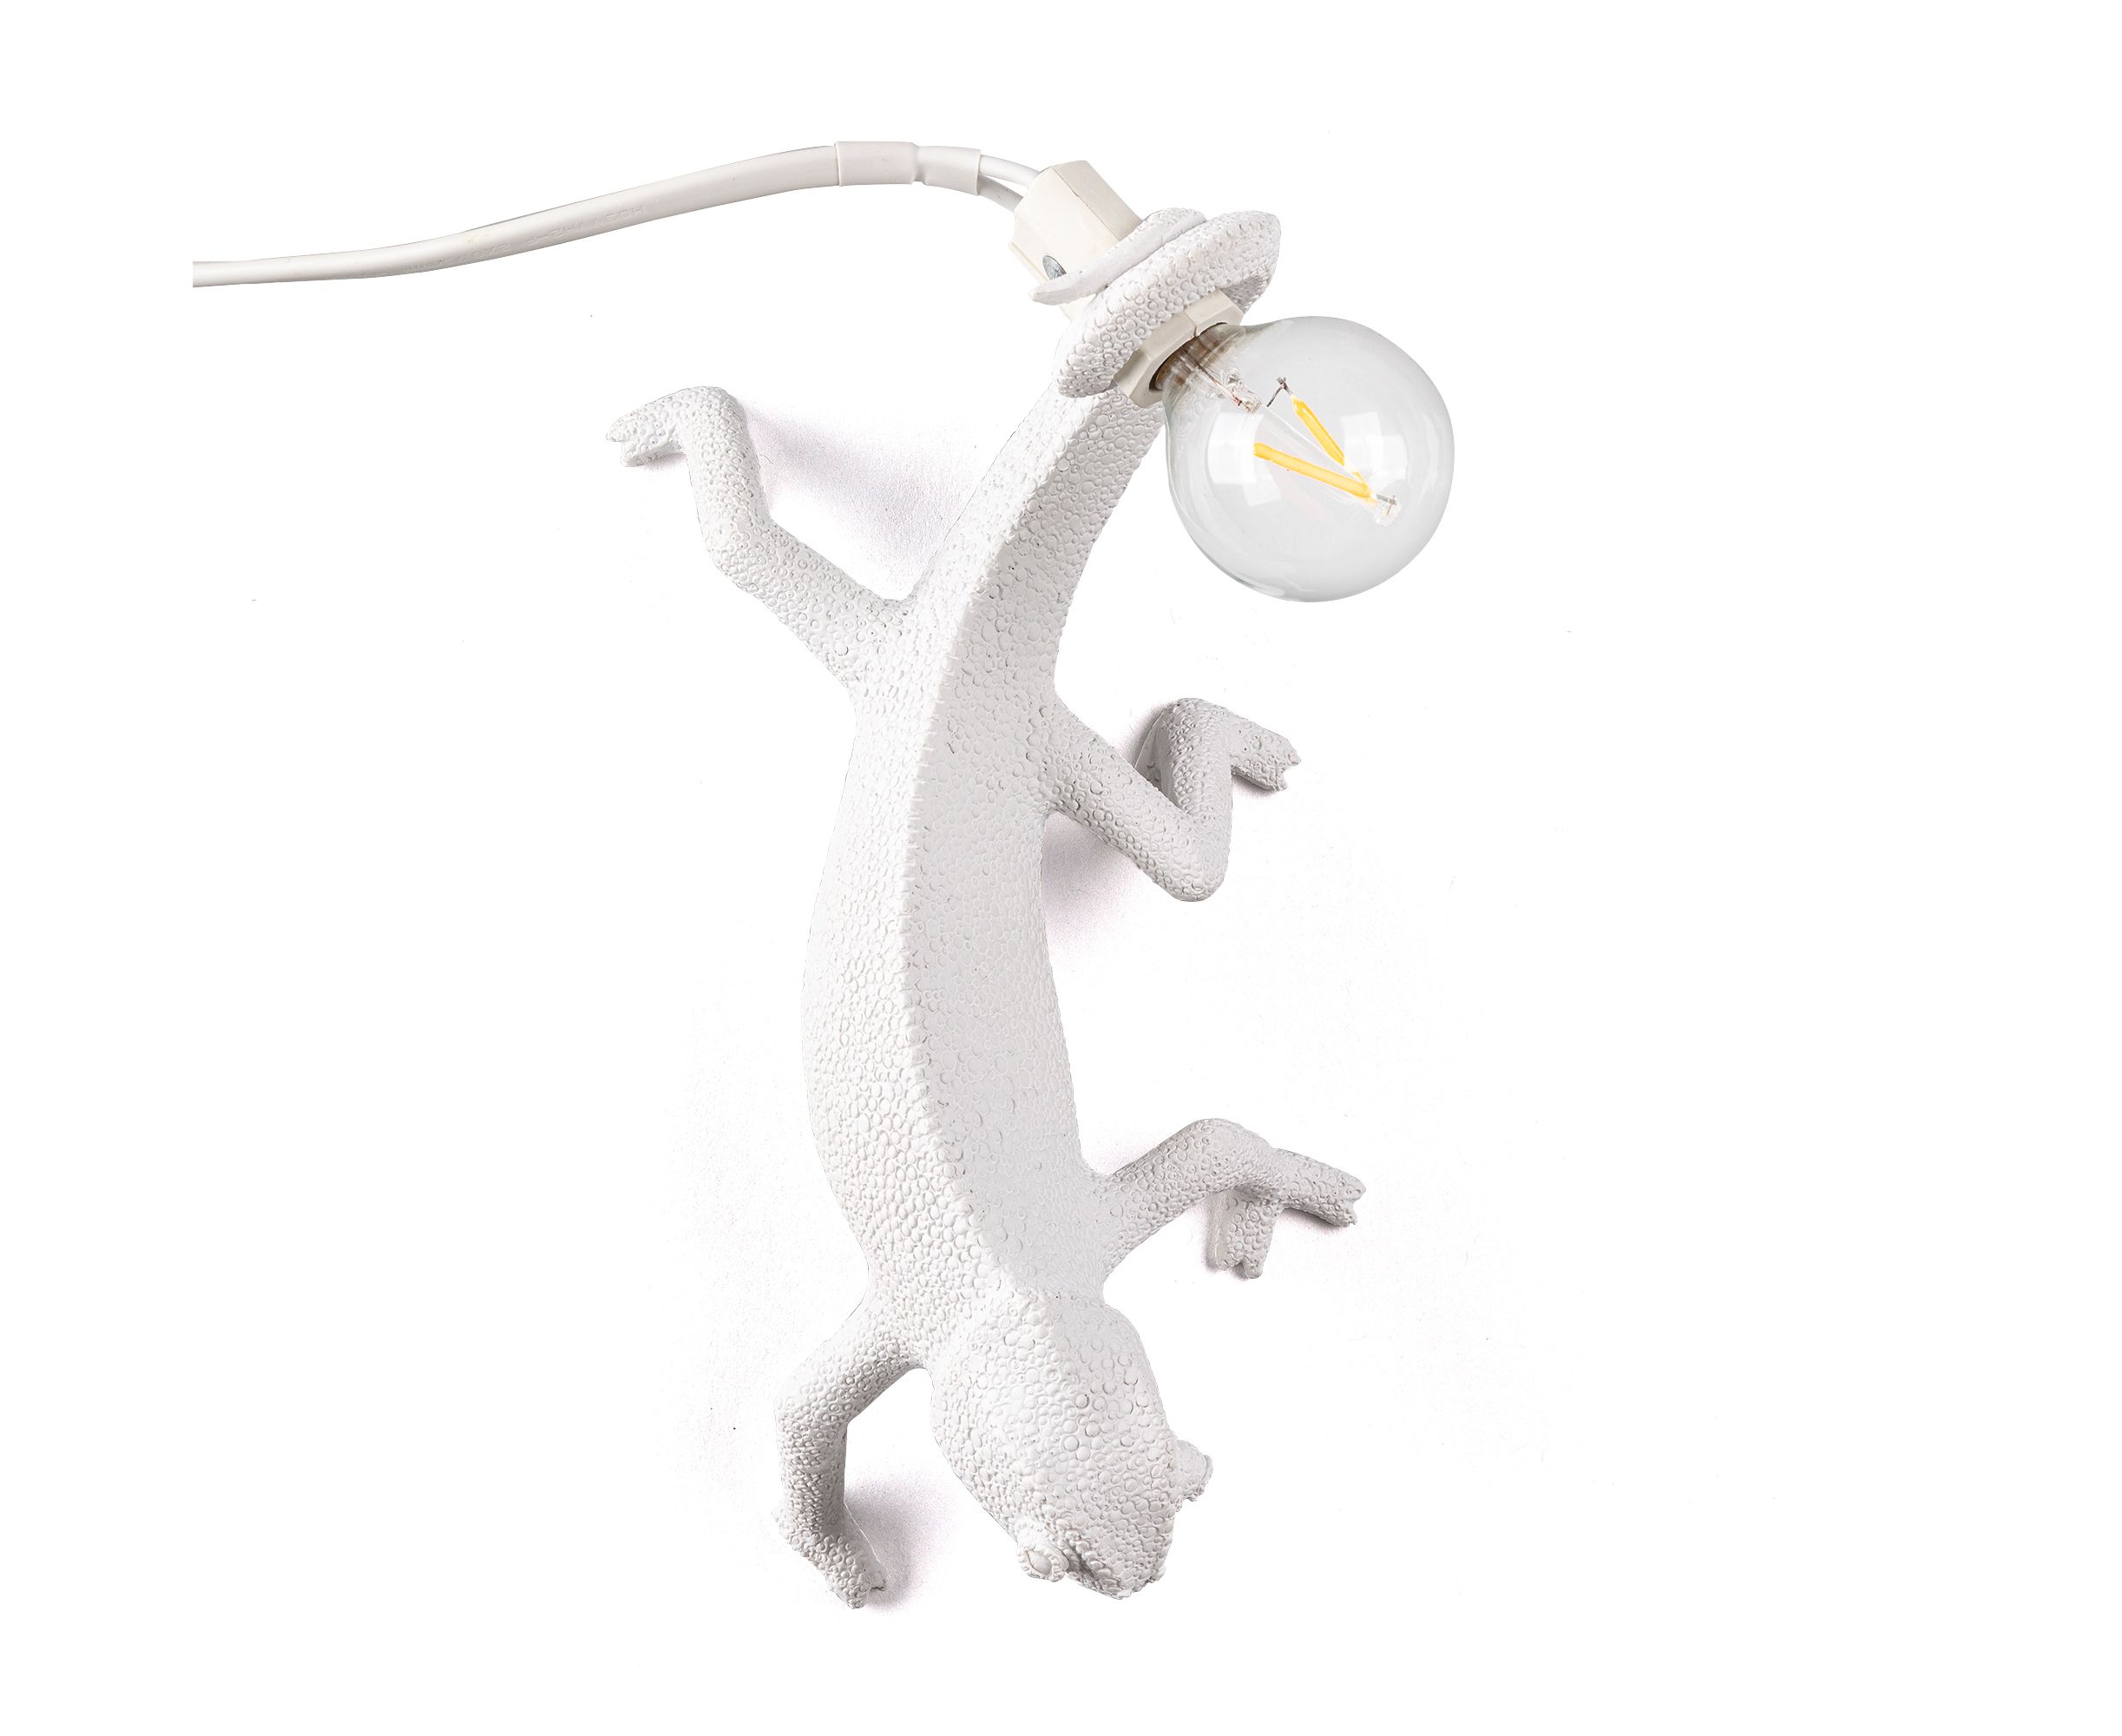 Светильник хамелеон. Настольная лампа Seletti Chameleon. Селетти светильник хамелеон. Бра Seletti Chameleon Lamp going up.